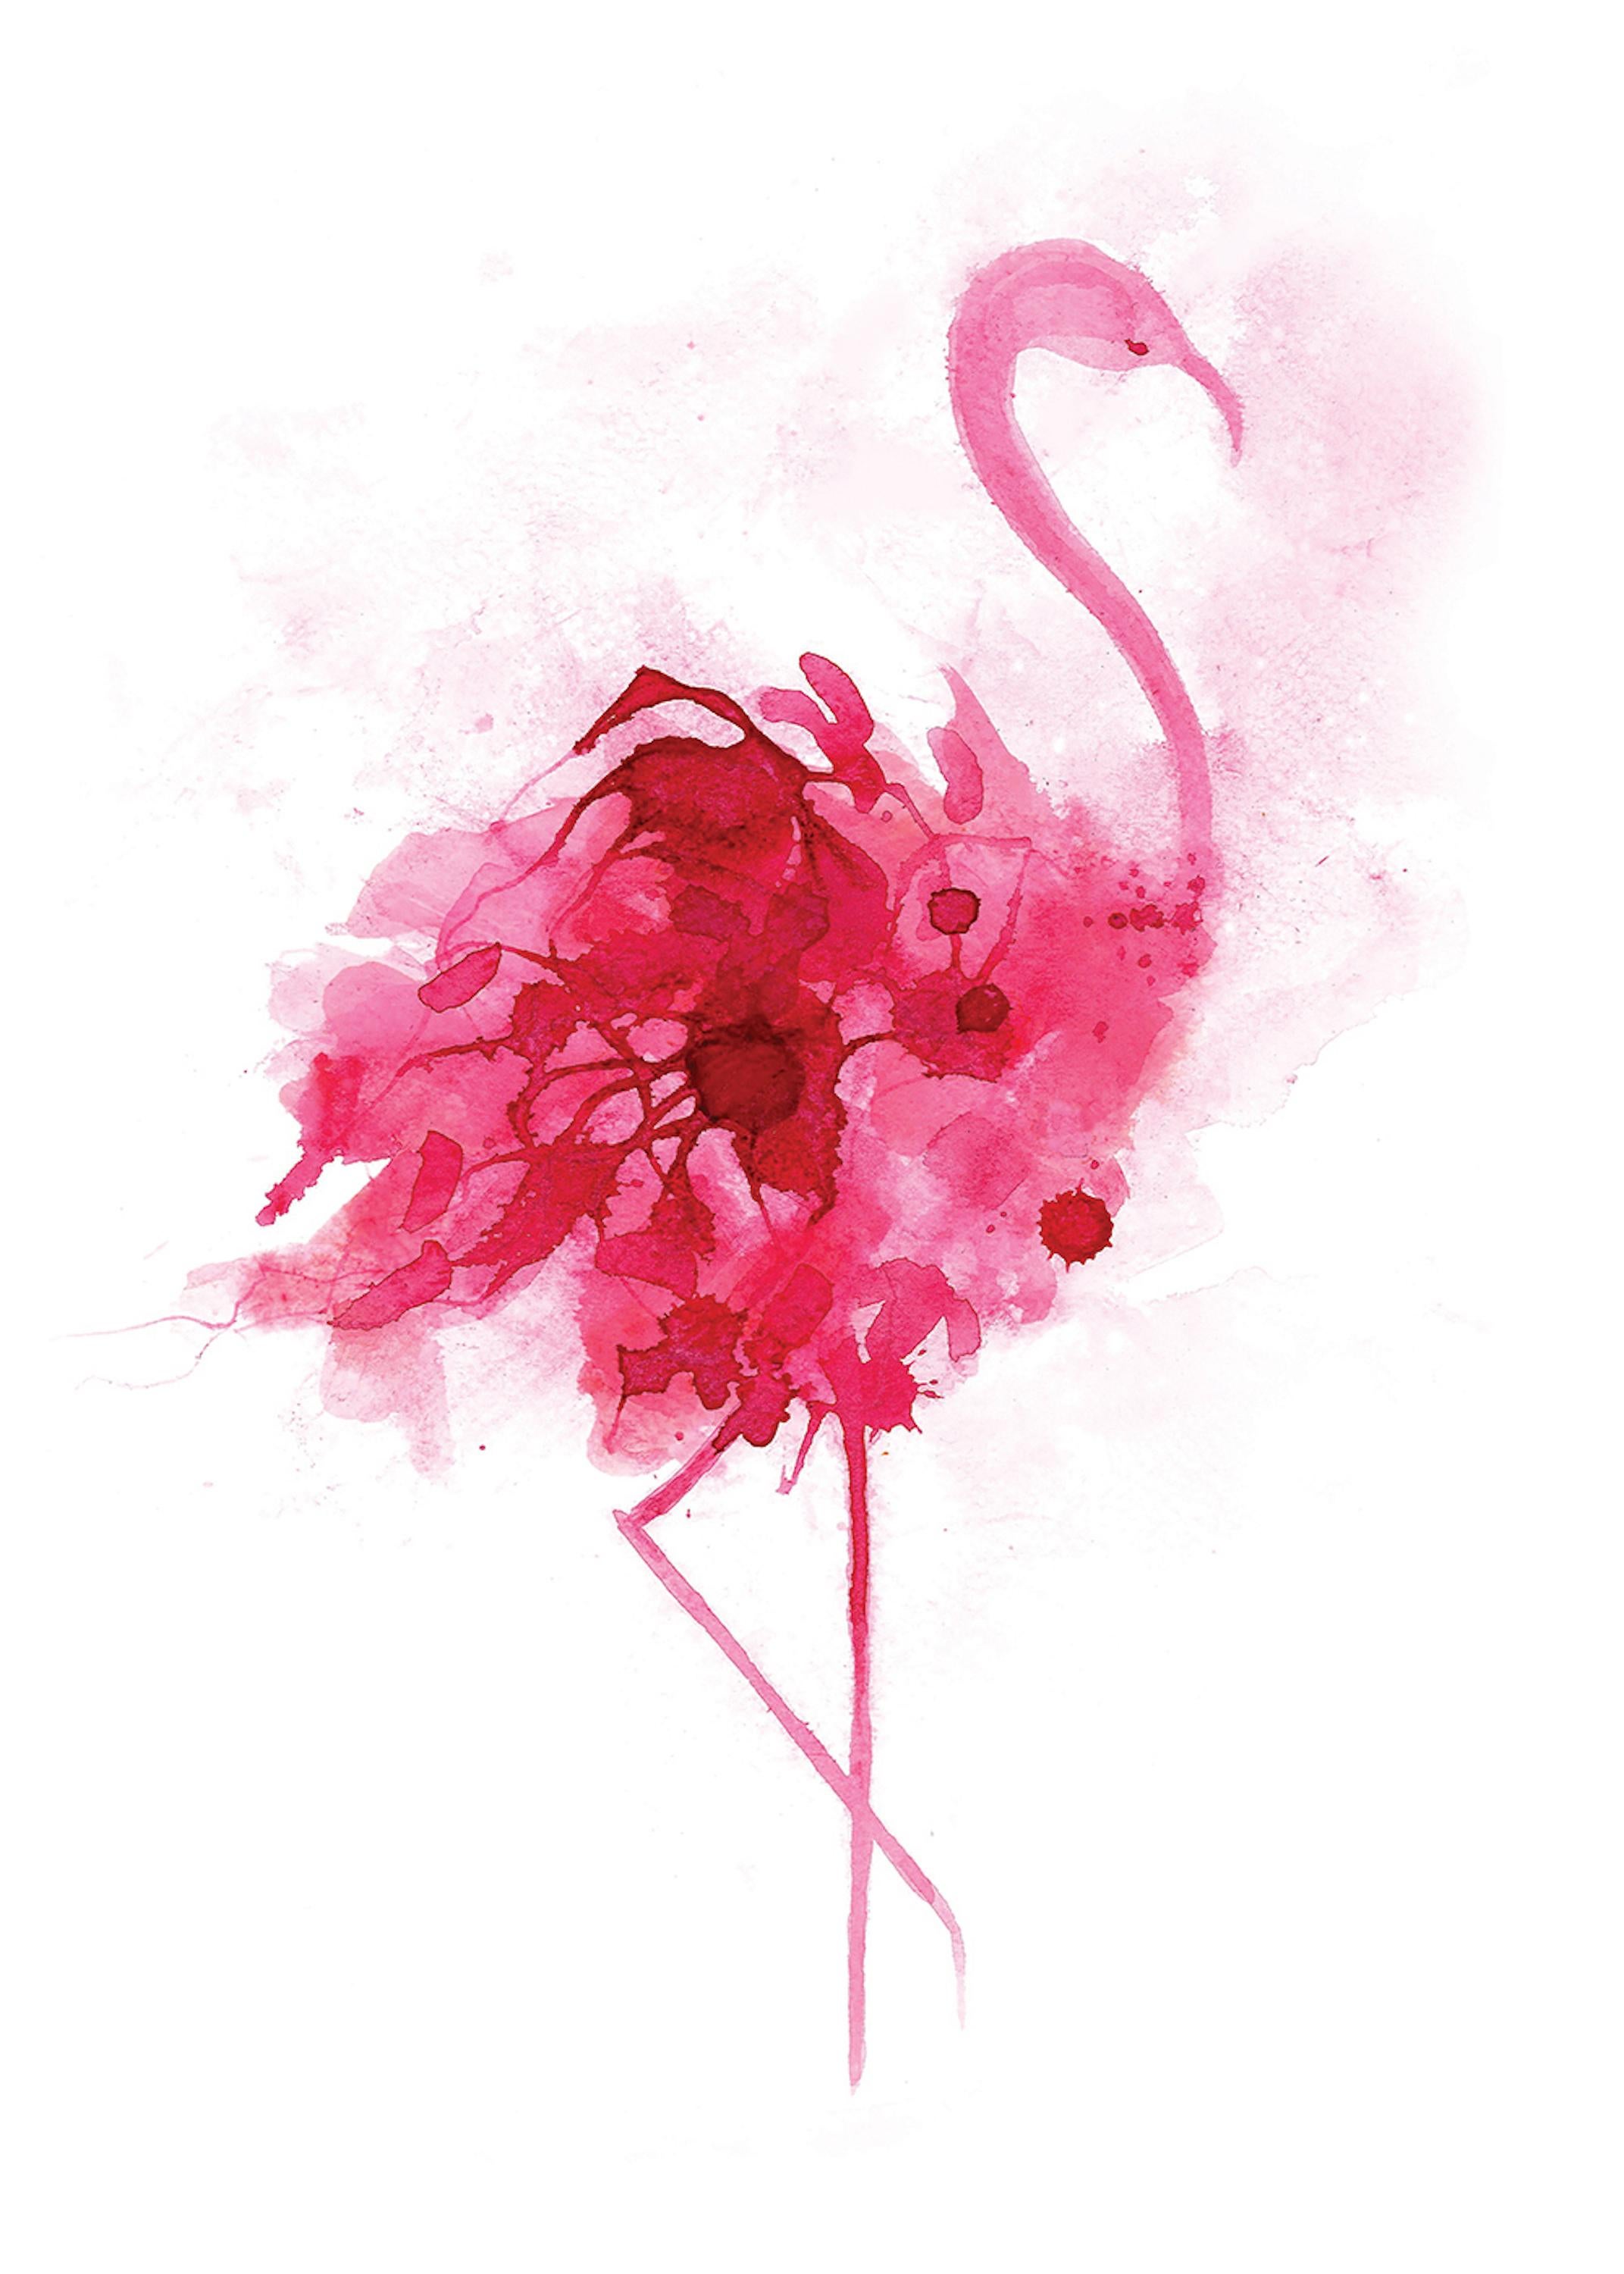 Flamingo .

Ein schöner CYMK-Siebdruck von Gavin Dobson.

Dieses beliebte Kunstwerk basiert auf einem Original-Aquarell dieses kultigen Vogels und wird vom Künstler individuell von Hand gedruckt, wobei er Halbtöne verwendet, um die überlagerten